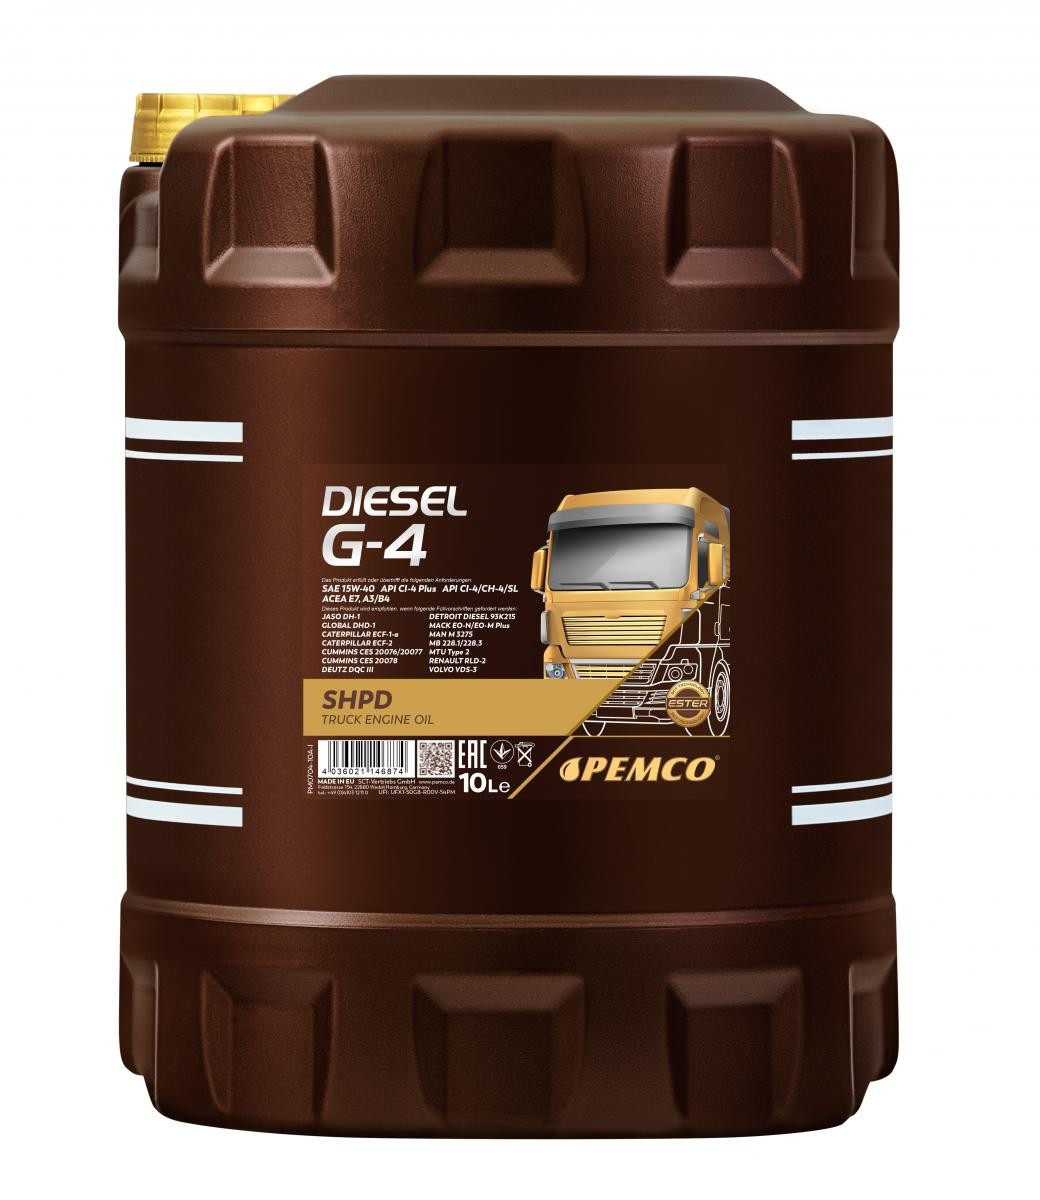 Engine oil API CG-4 PEMCO - PM0704-10 Truck SHPD, DIESEL G-4 SHPD